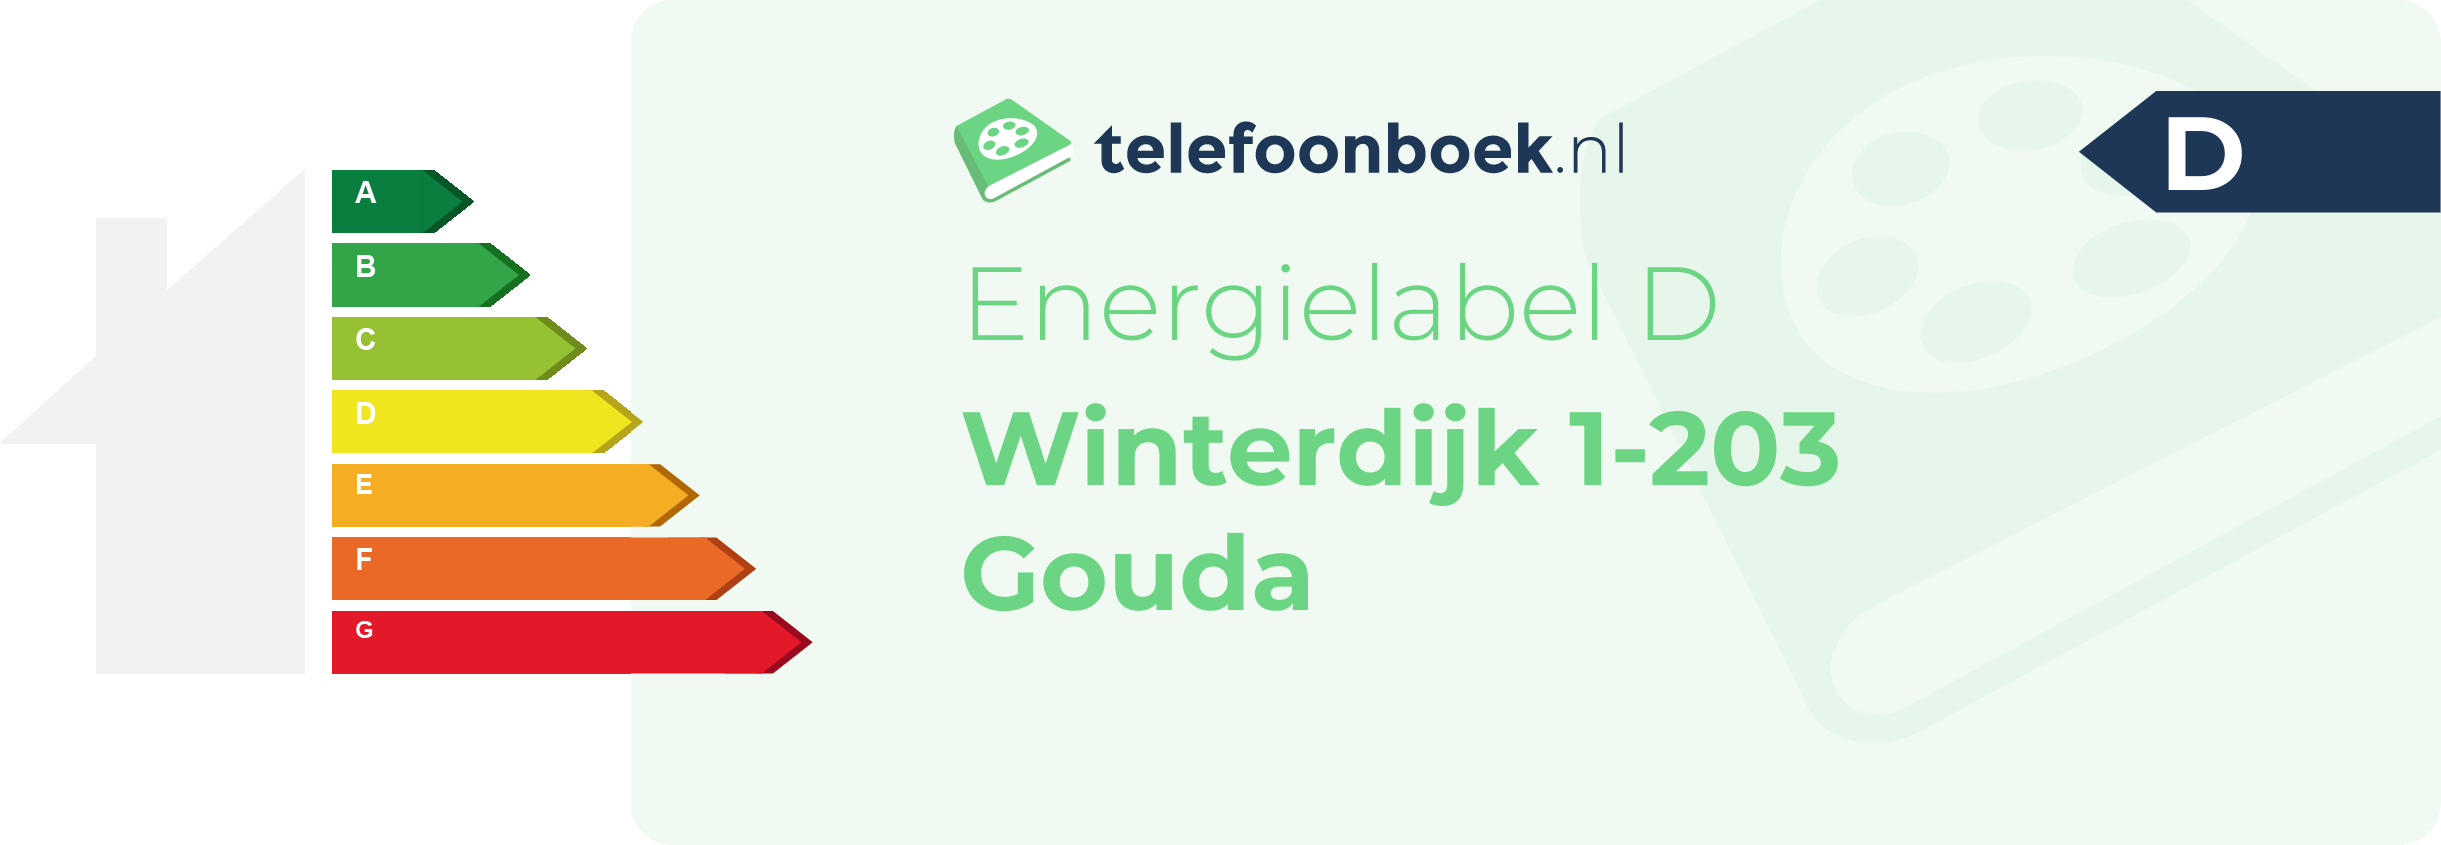 Energielabel Winterdijk 1-203 Gouda